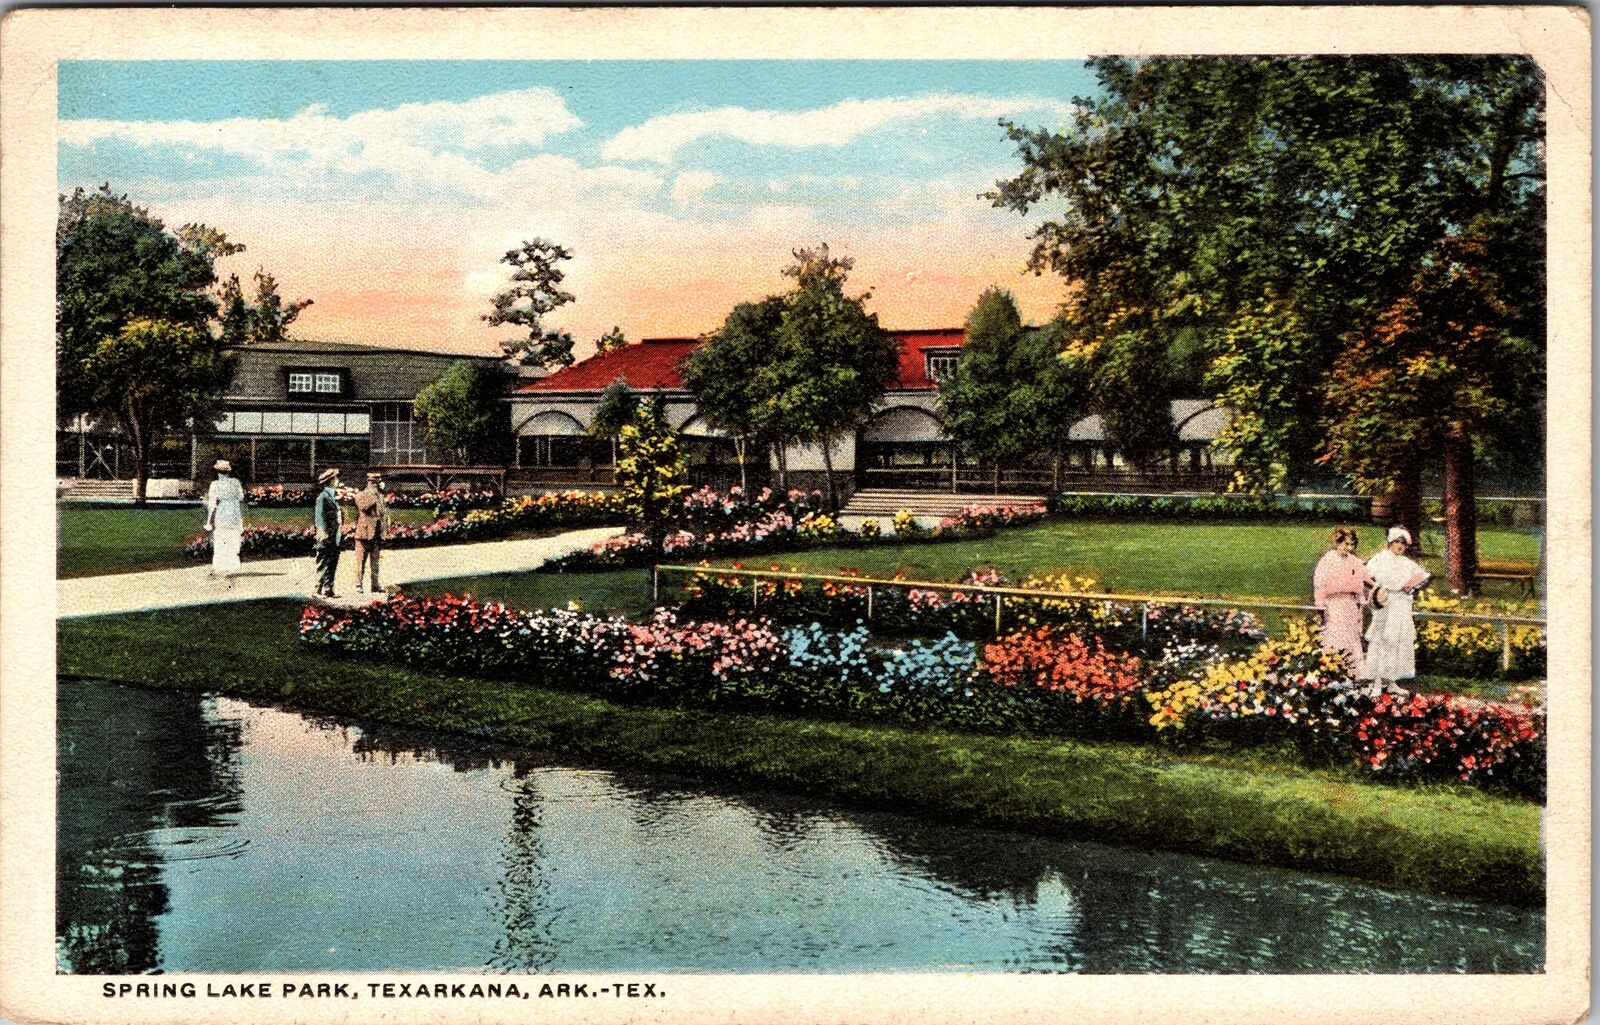 Texarkana TX-Texas, Spring Lake Park, Garden, Visitors, Vintage Postcard